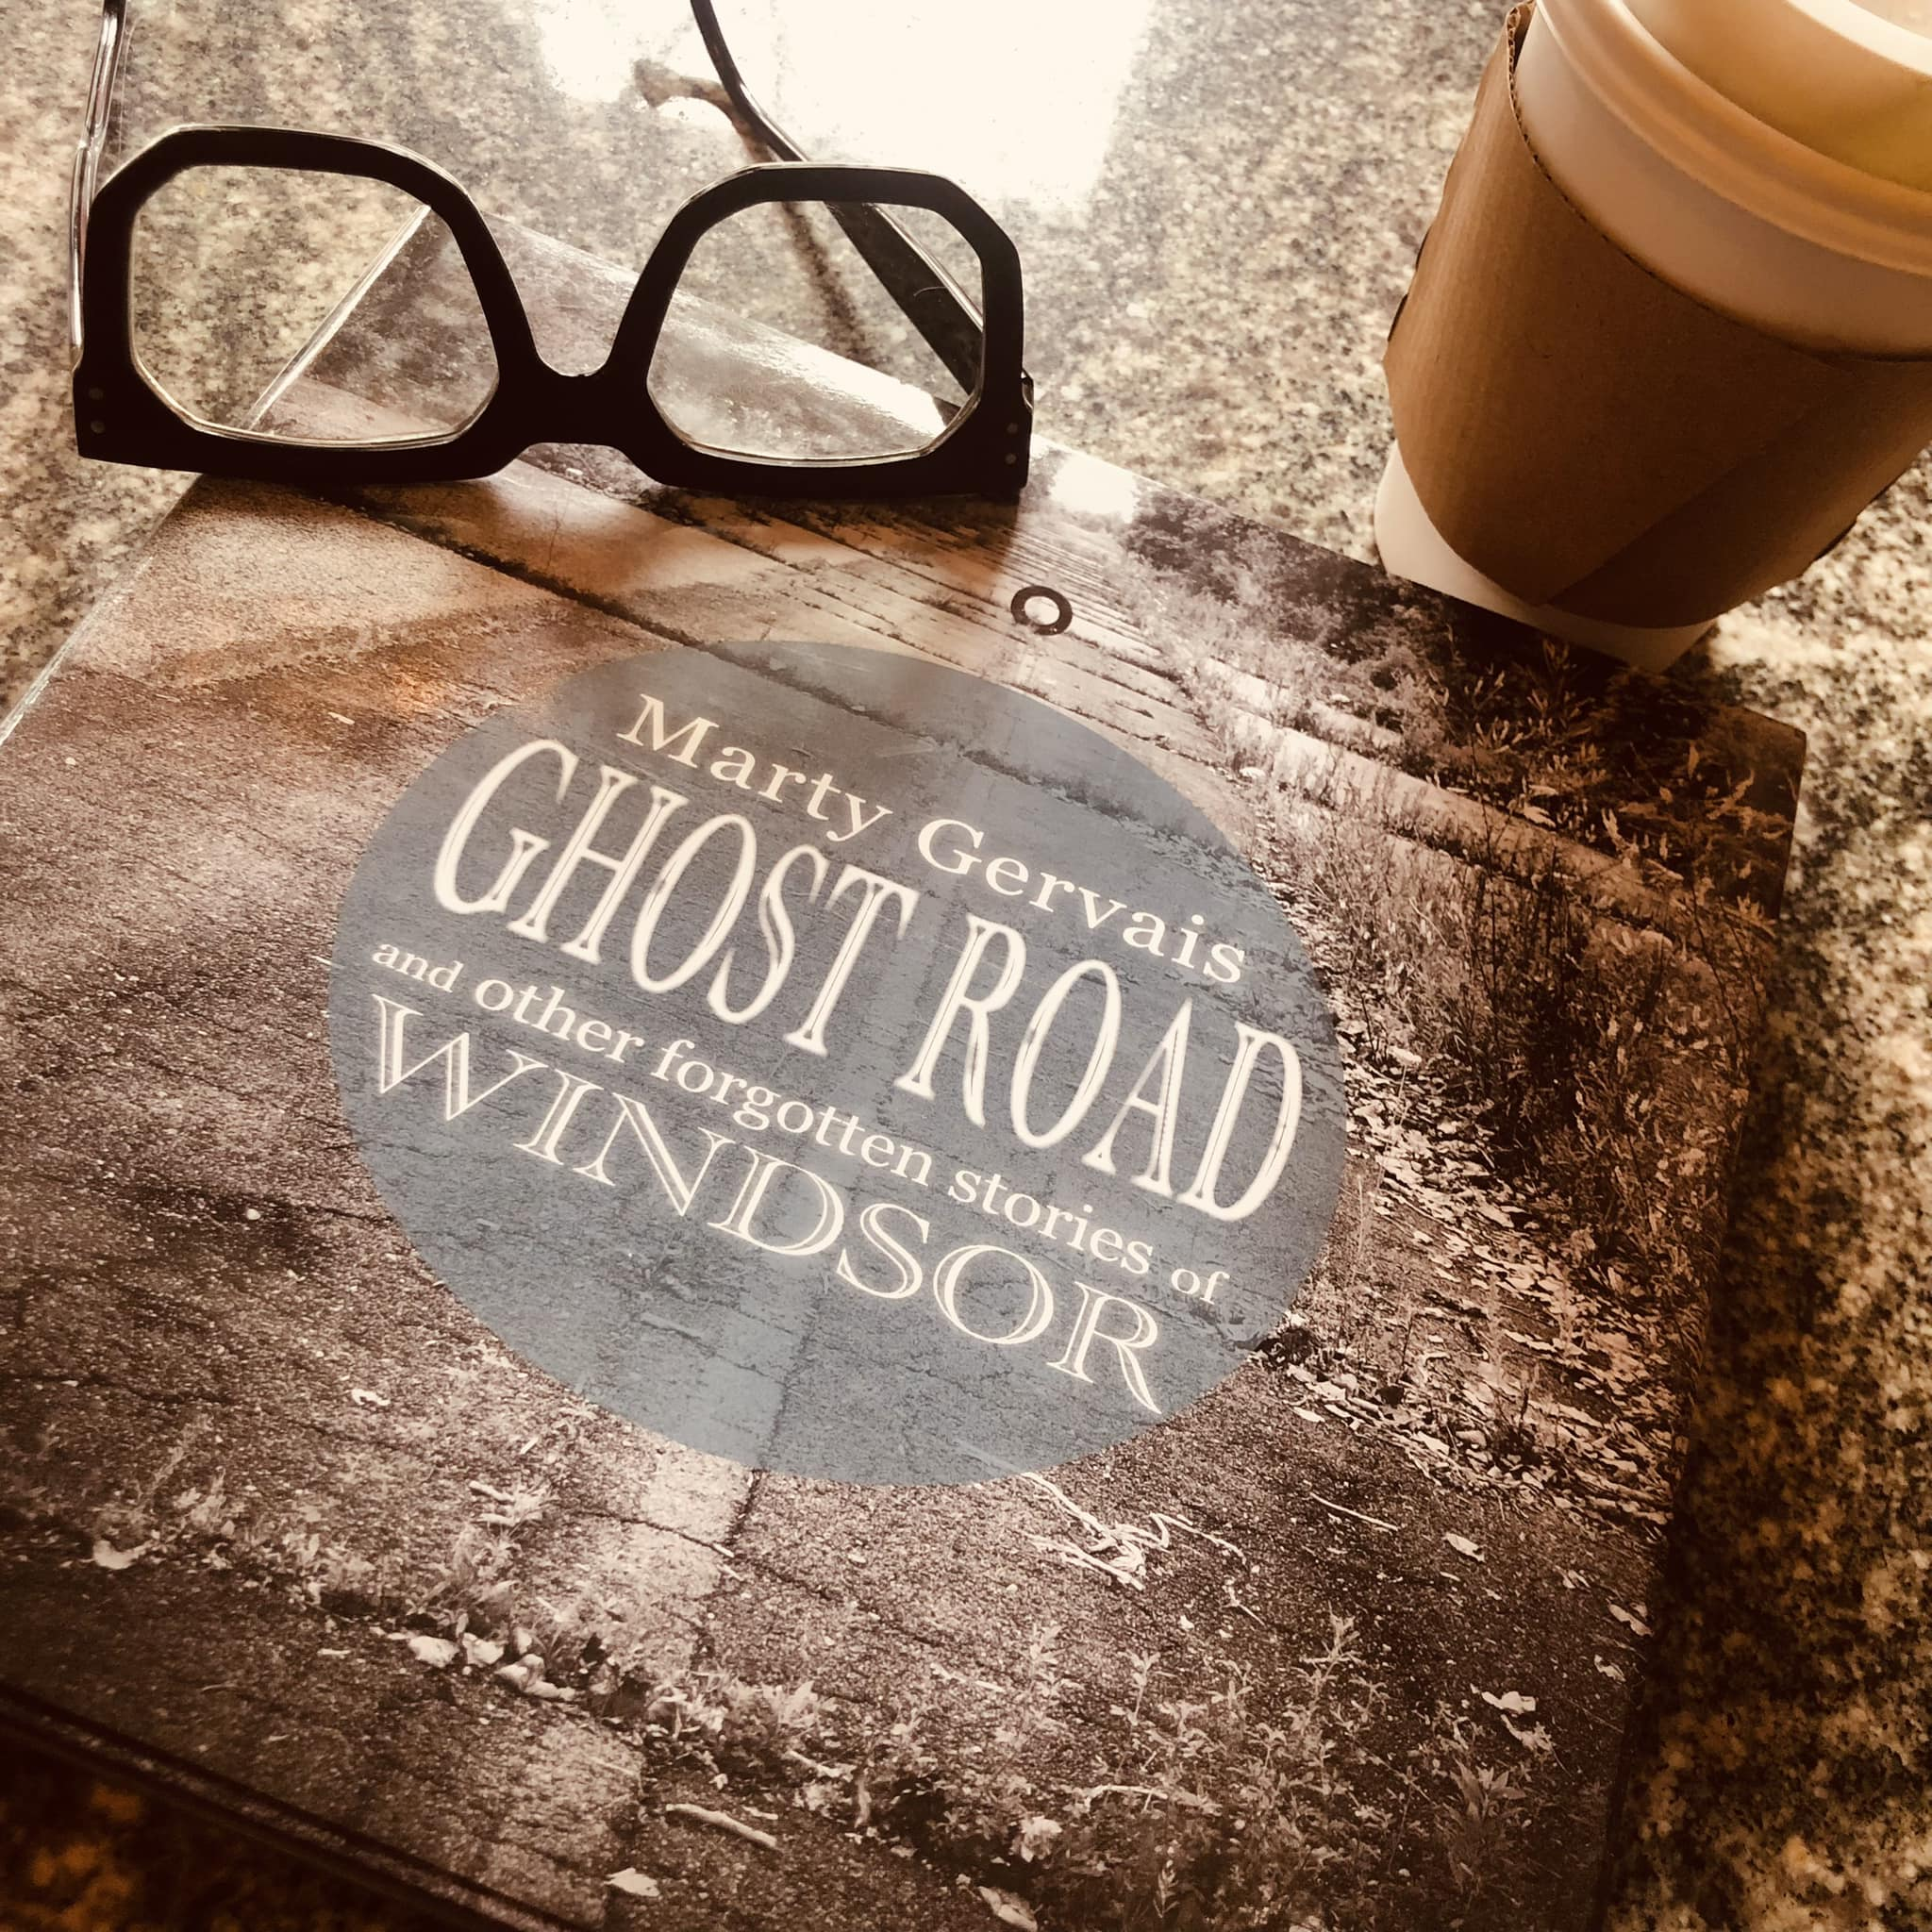 Dan's Book Club Announcement: Ghost Road